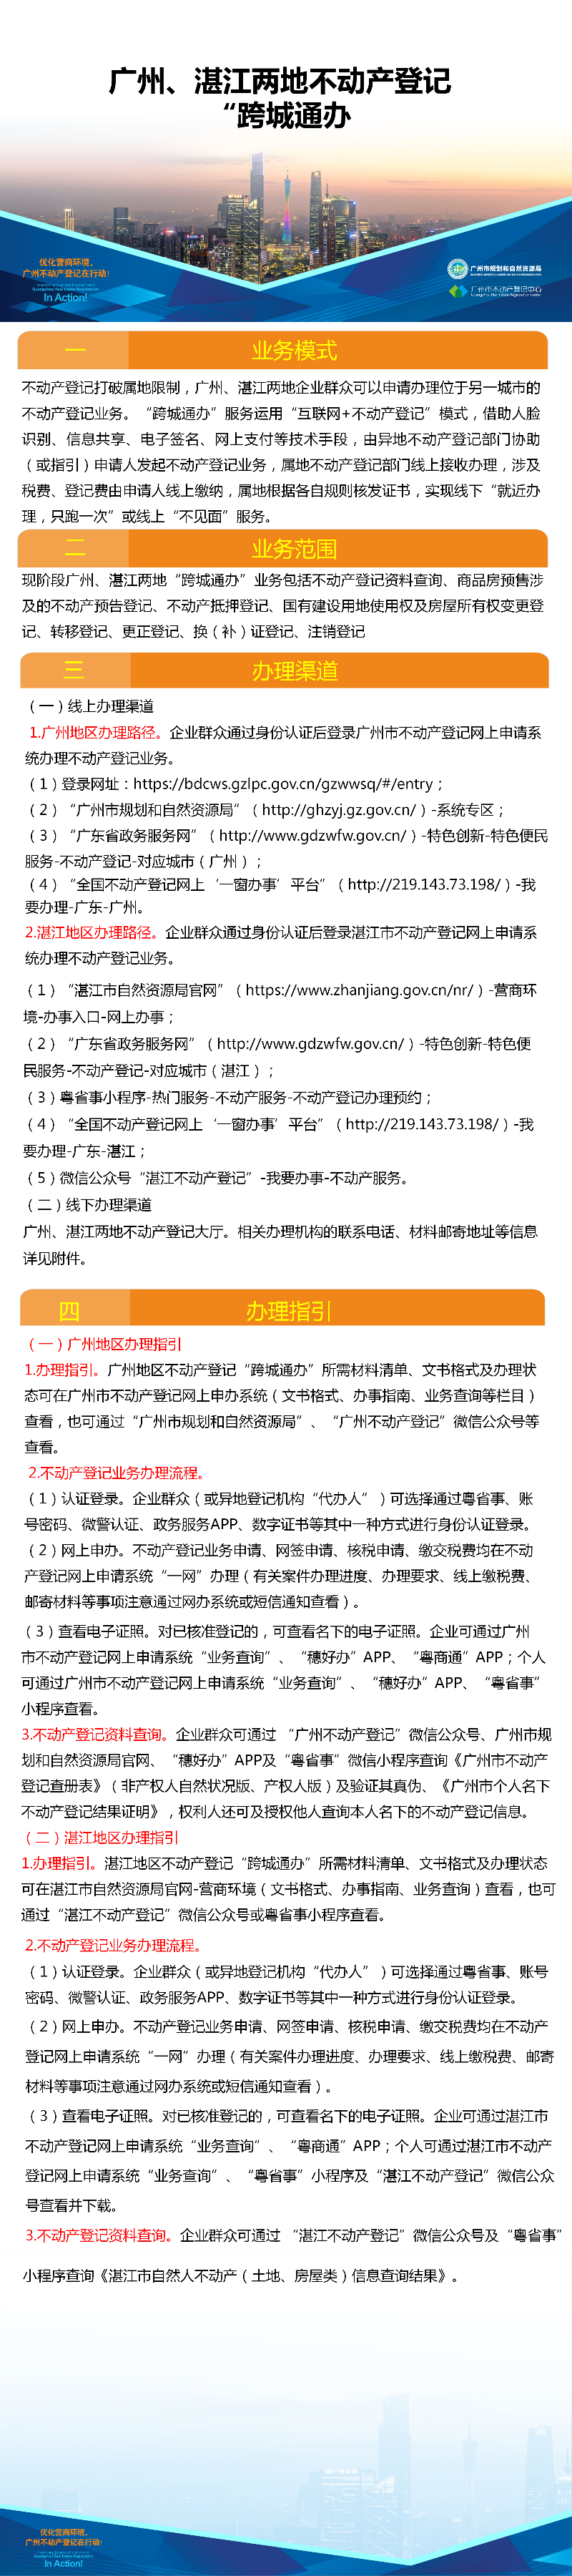 一图读懂-广州、湛江两地不动产登记业务“跨城通办”.png